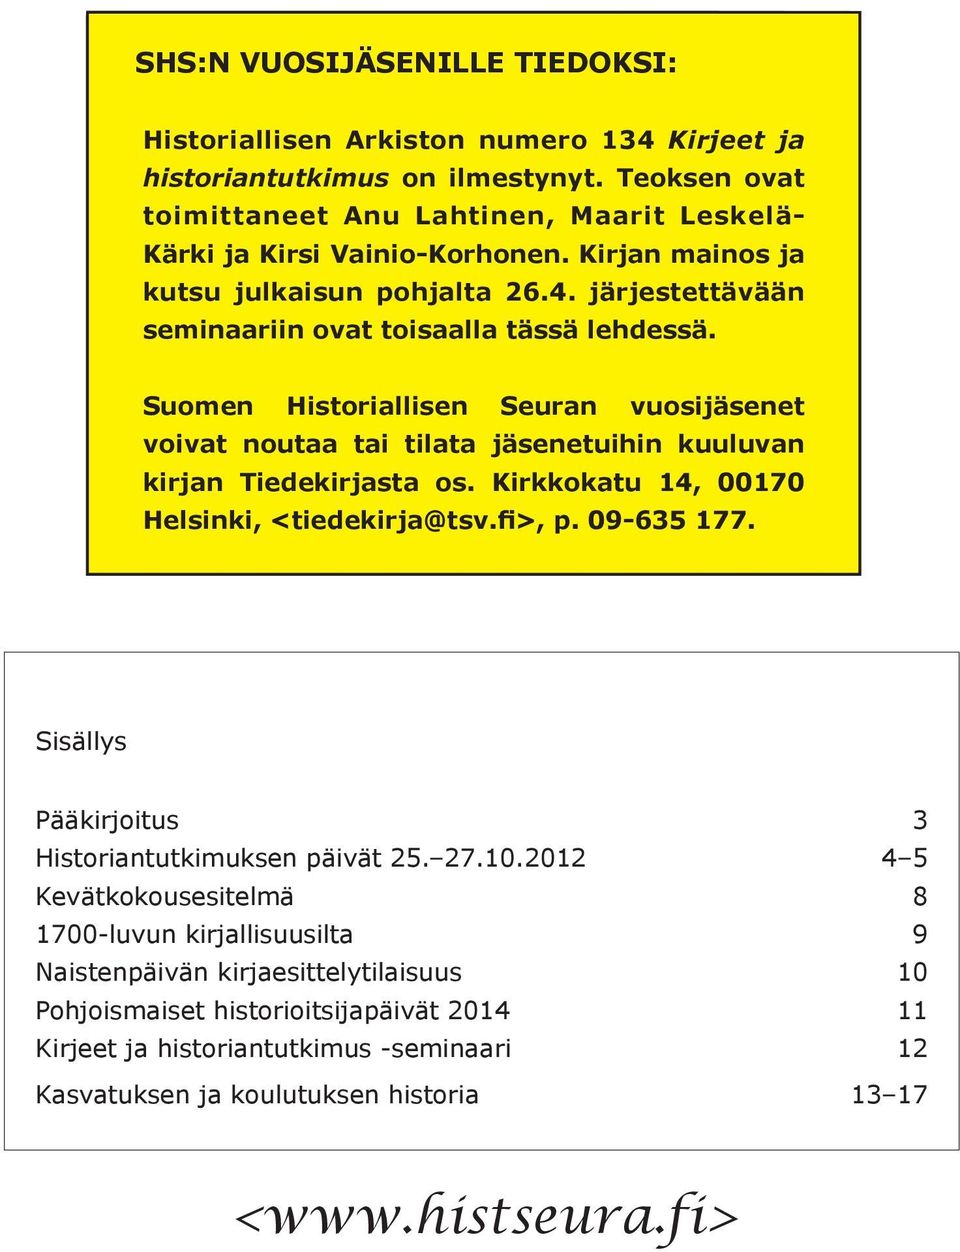 Suomen Historiallisen Seuran vuosijäsenet voivat noutaa tai tilata jäsenetuihin kuuluvan kirjan Tiedekirjasta os. Kirkkokatu 14, 00170 Helsinki, <tiedekirja@tsv.fi>, p. 09-635 177.